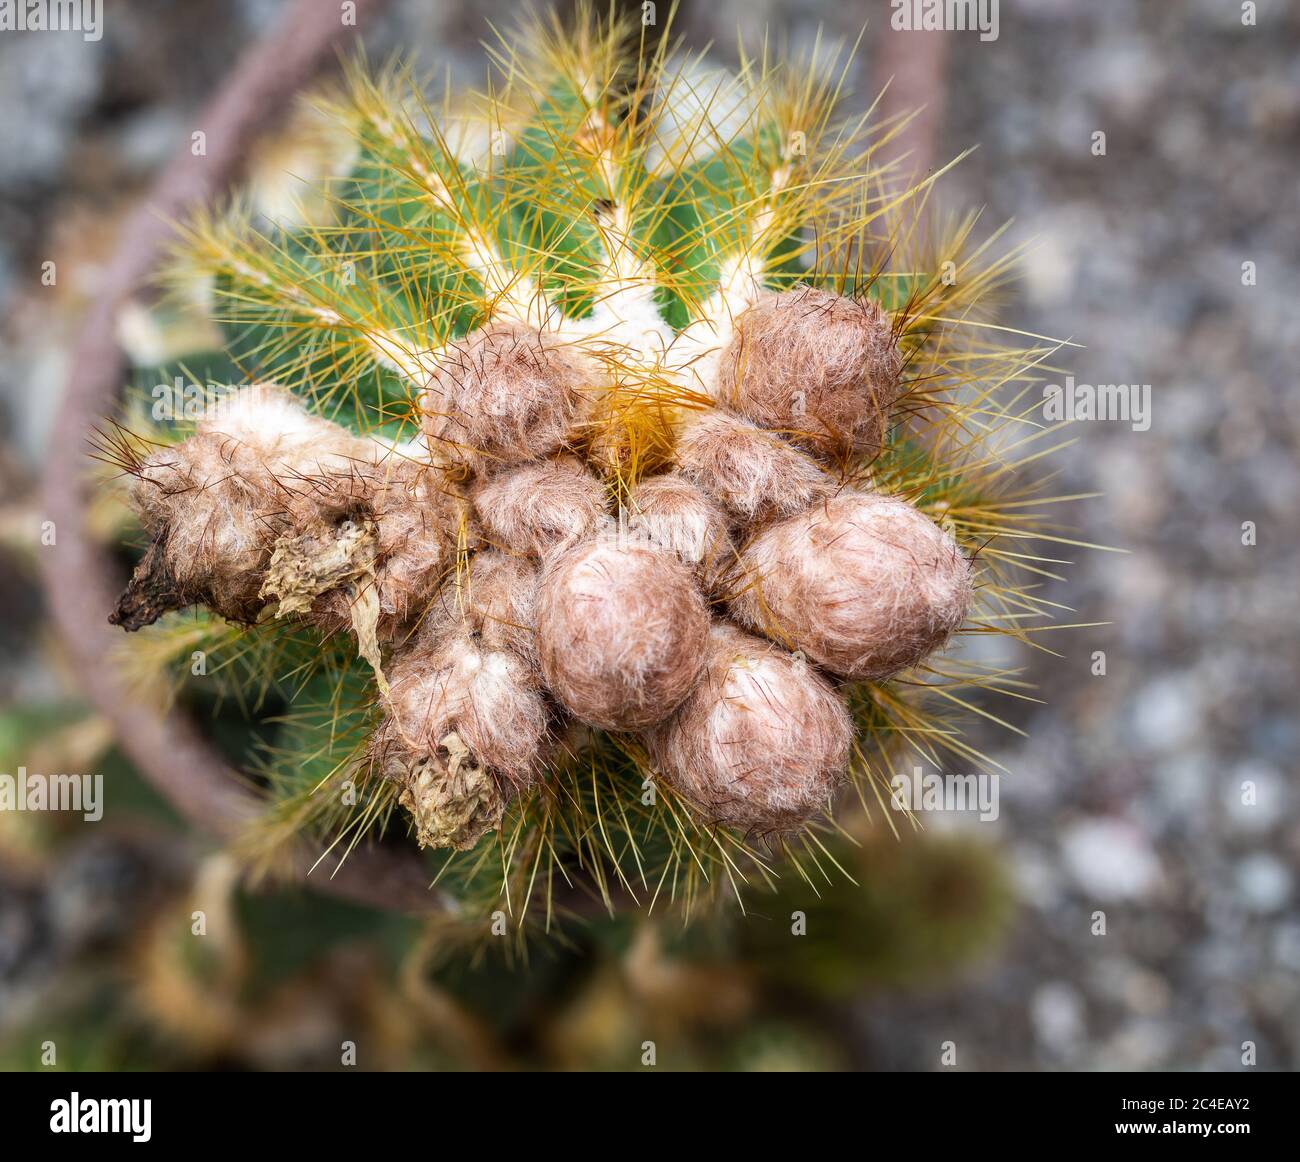 Primo piano del cactus spiroso e vagamente Eriocephala magnifica, una pianta originaria della famiglia delle cactaceae del Sud America Foto Stock